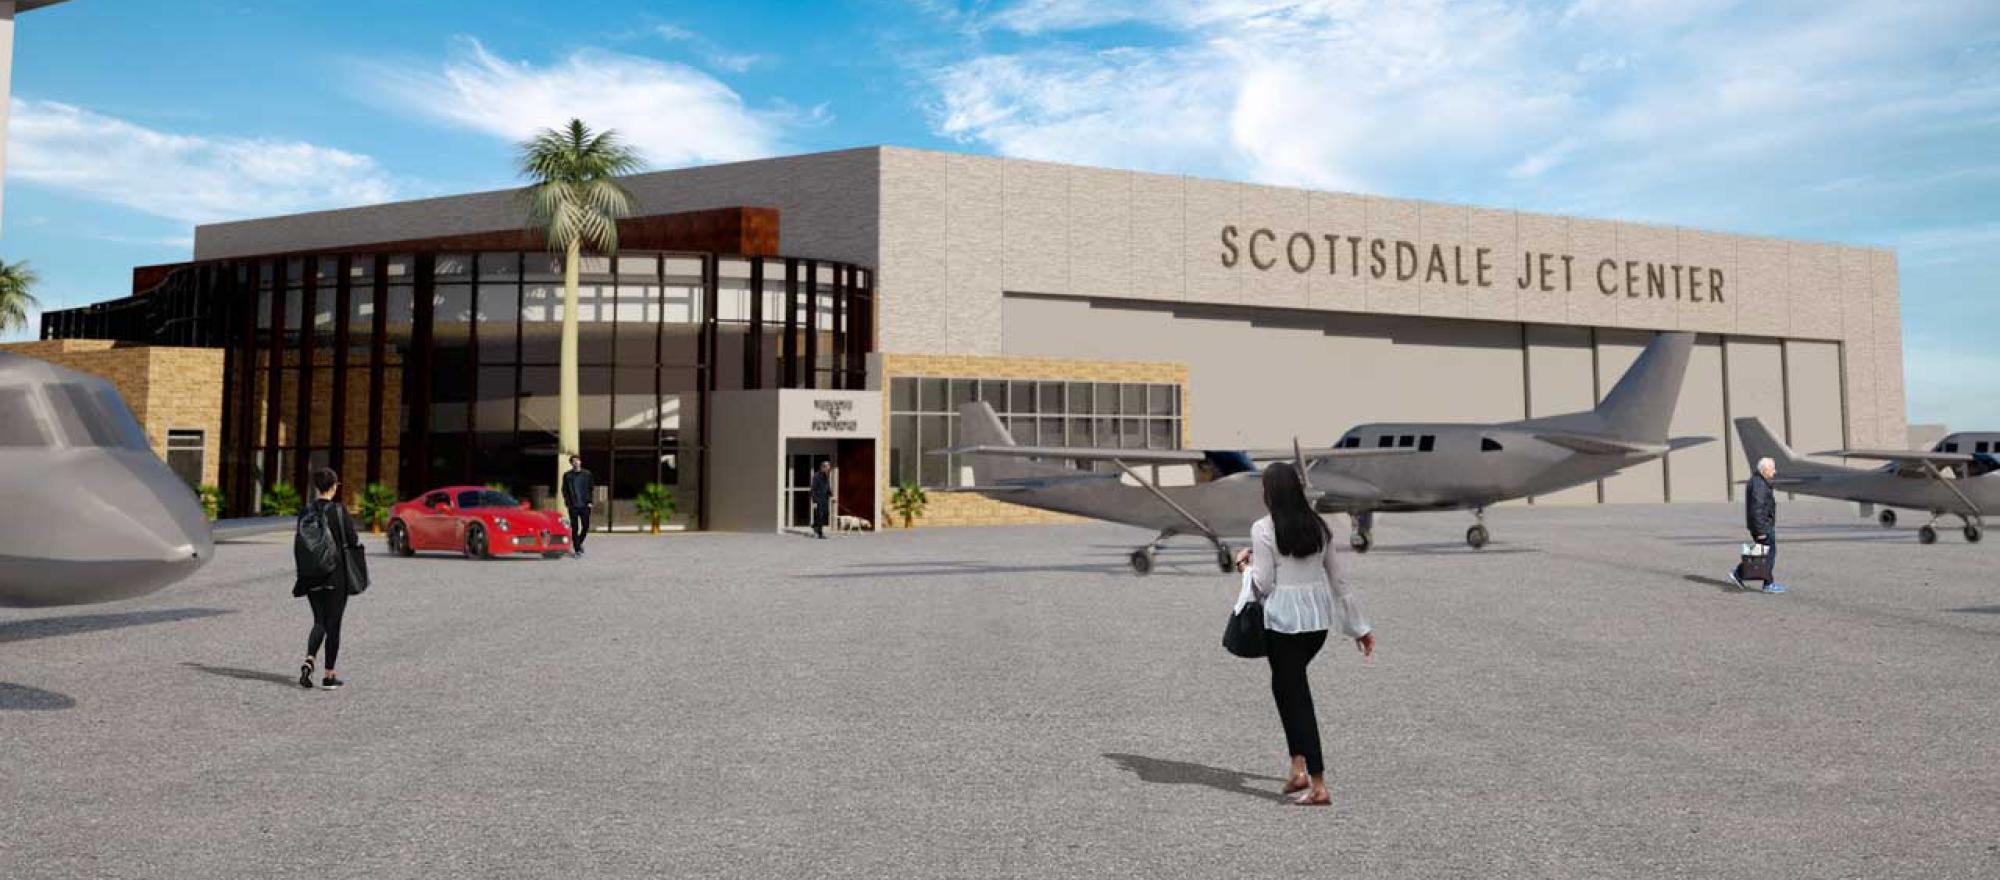 Artis rendering of Scottsdale Jet Center